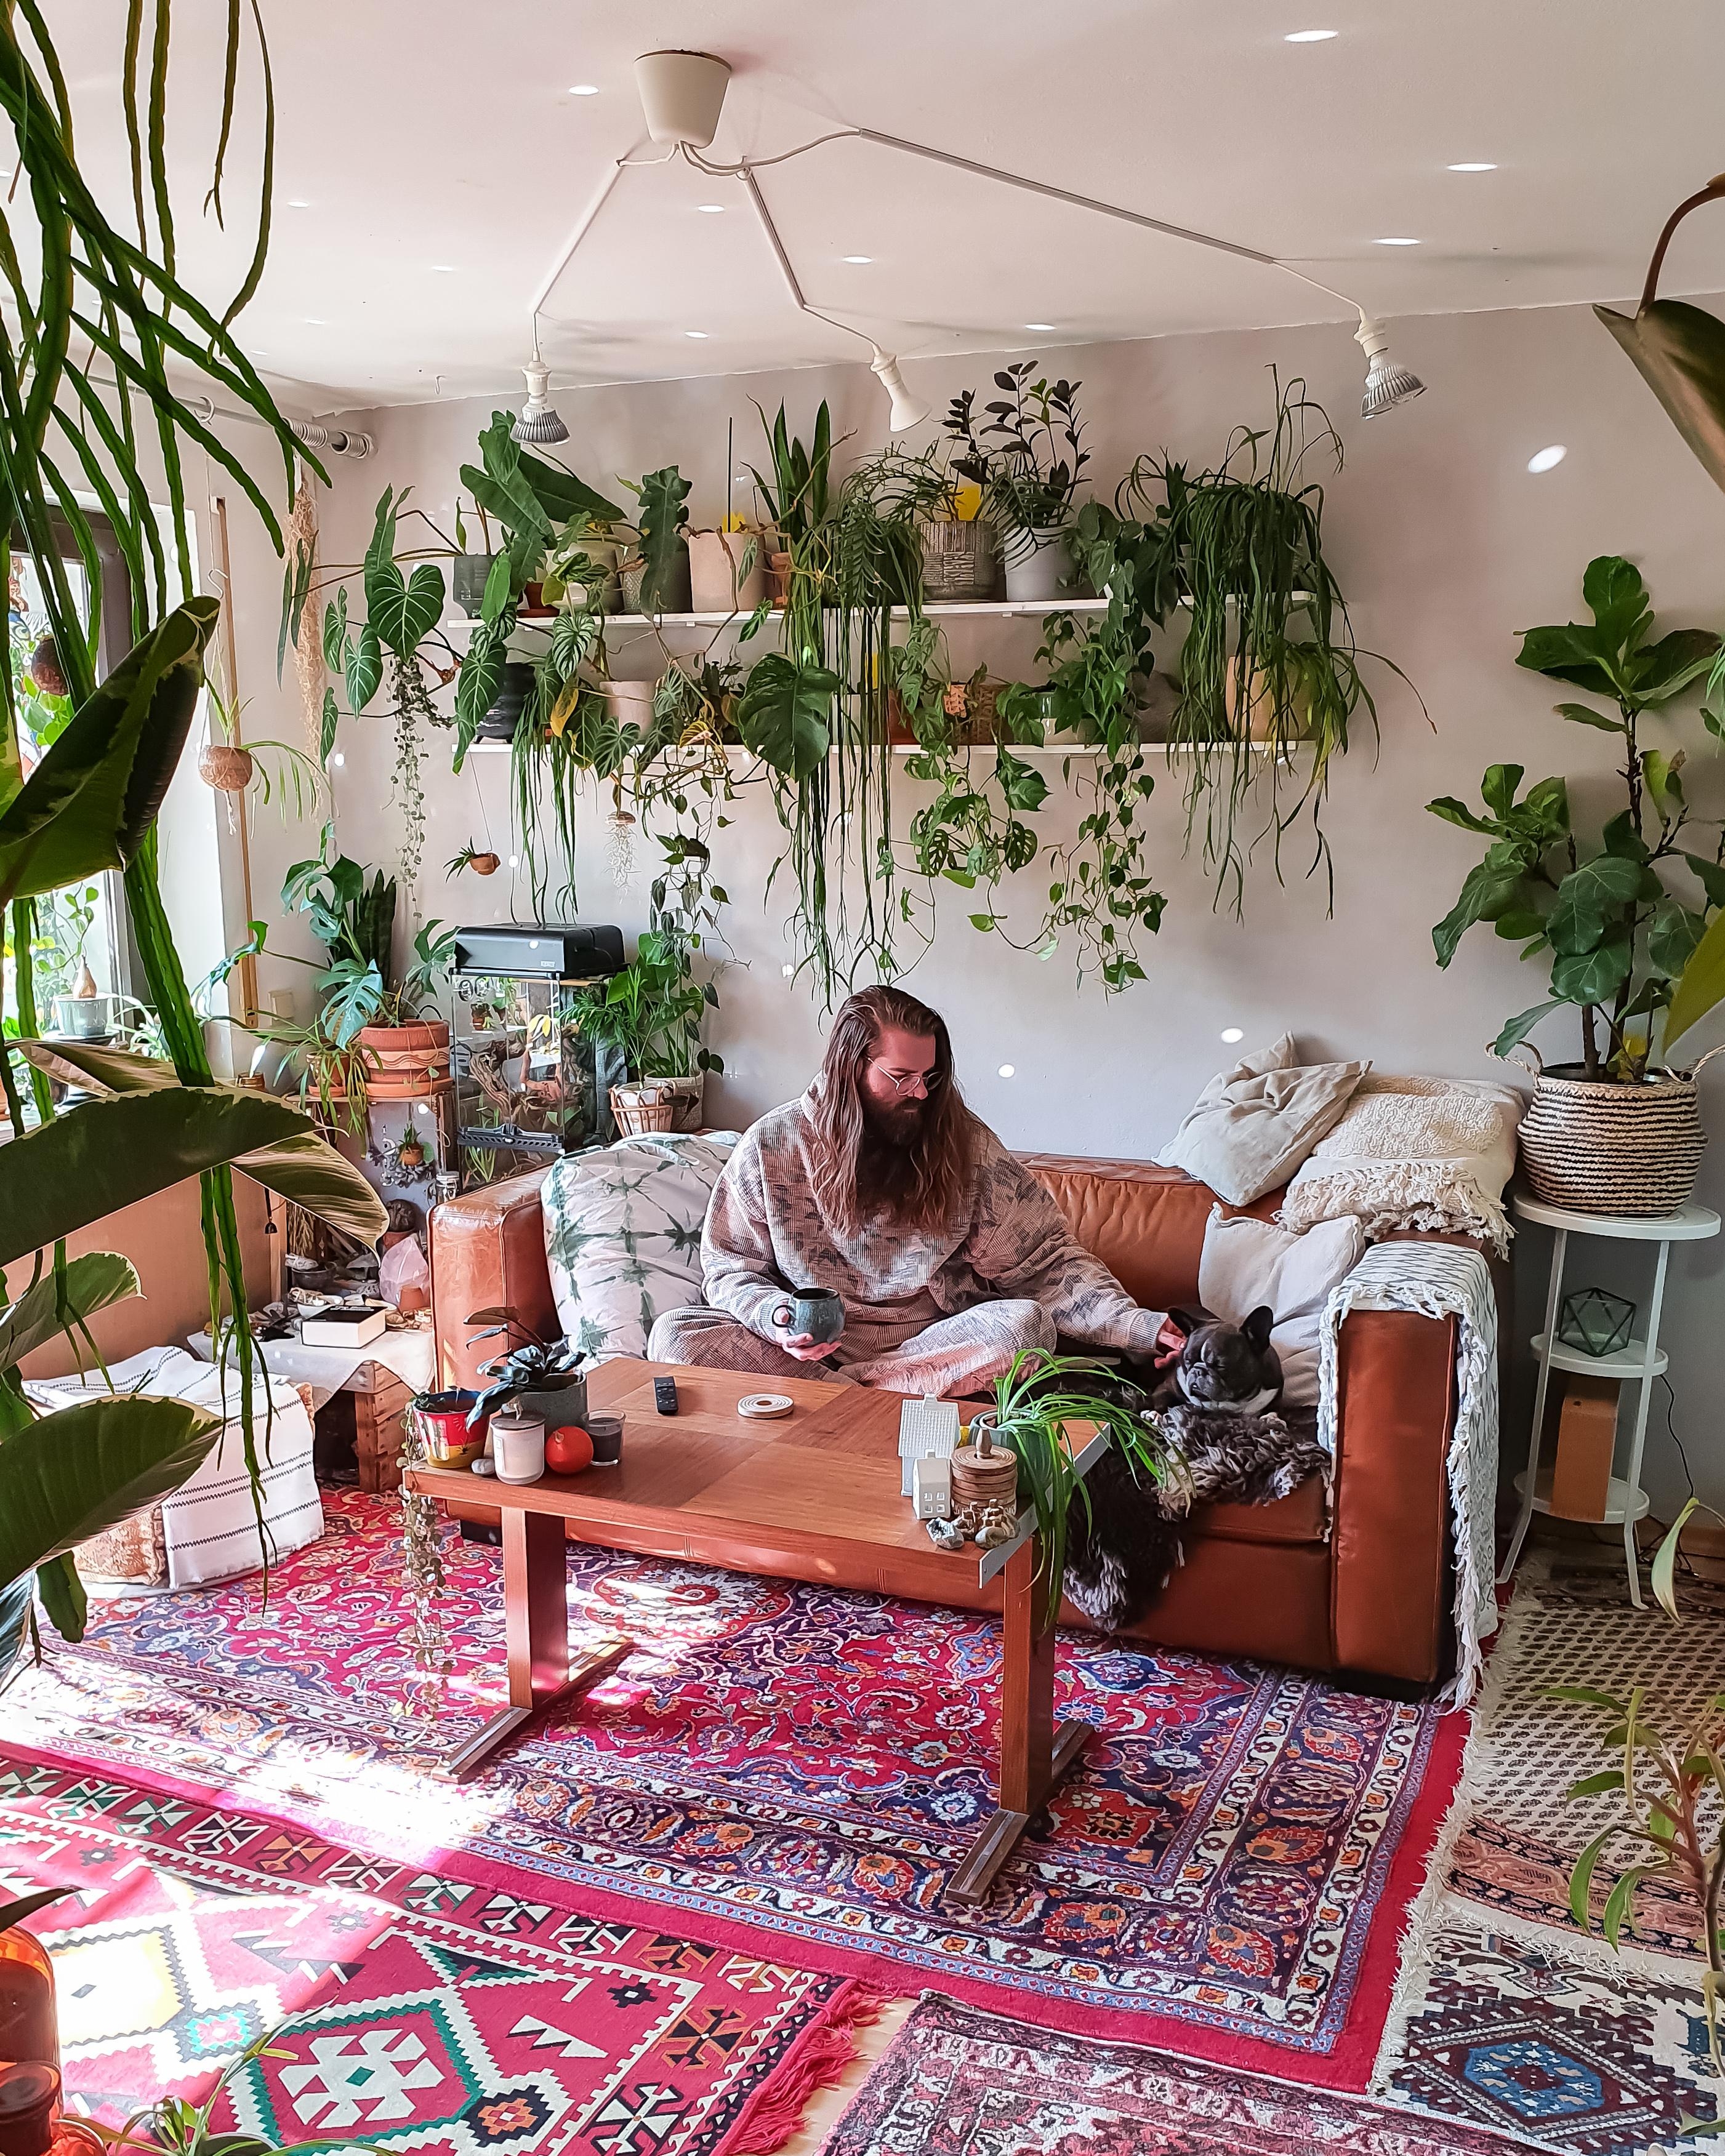 Montag #Wohnzimmer #Pflanzen #grün #Regal #Teppich #boho #urbanjungle